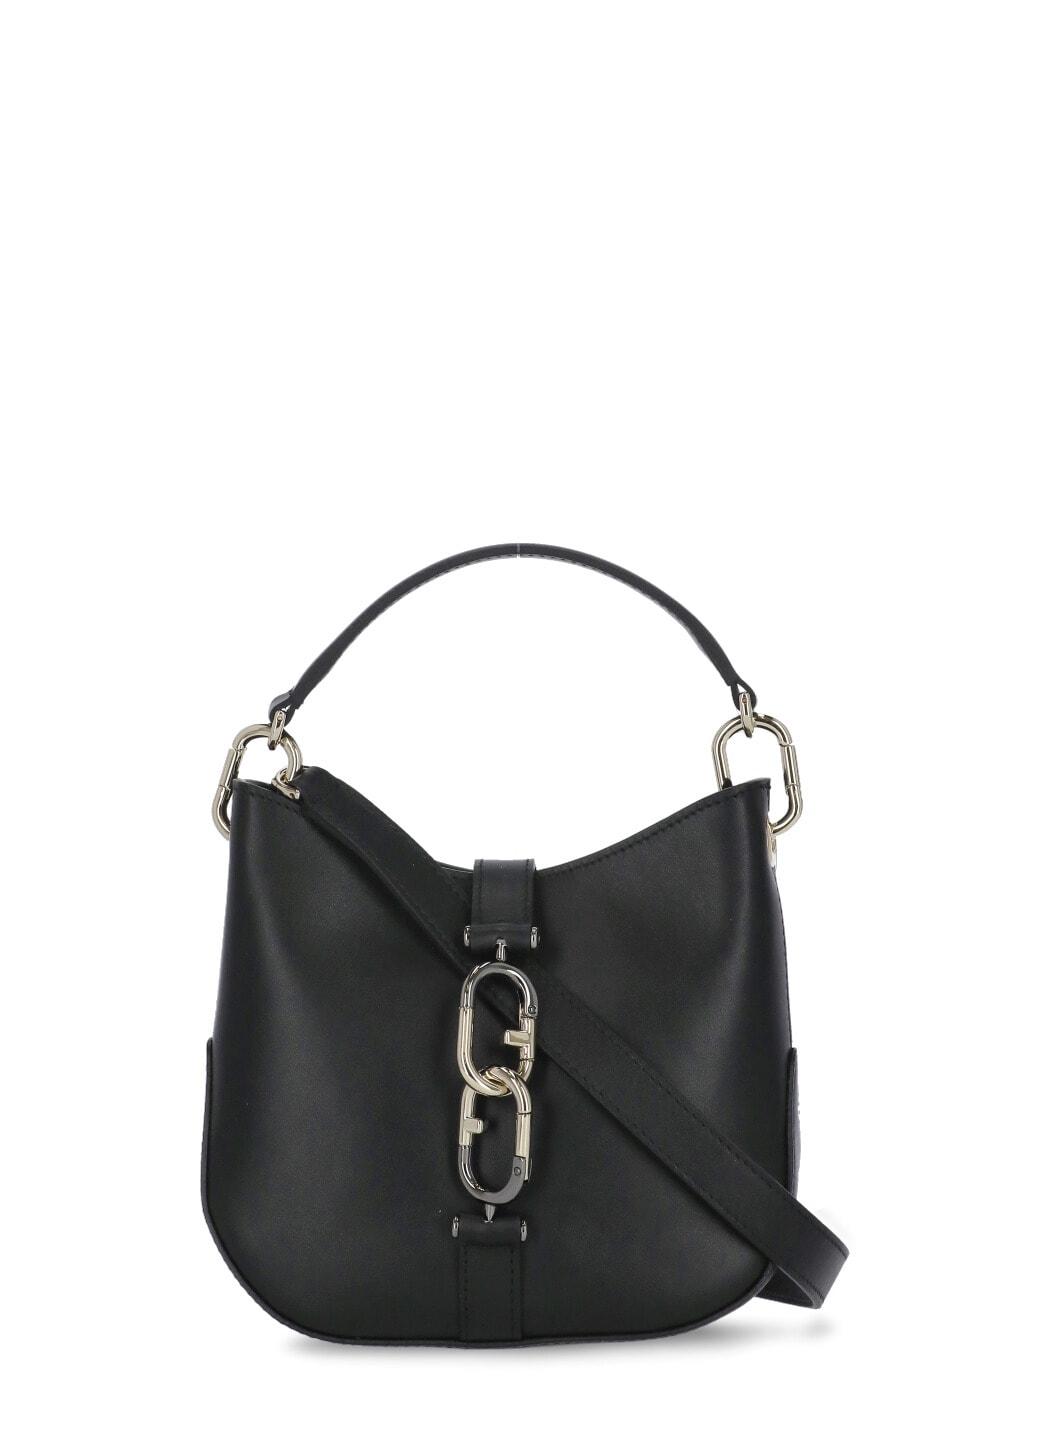 Furla Sirena Mini Hobo Shoulder Bag in Black | Lyst